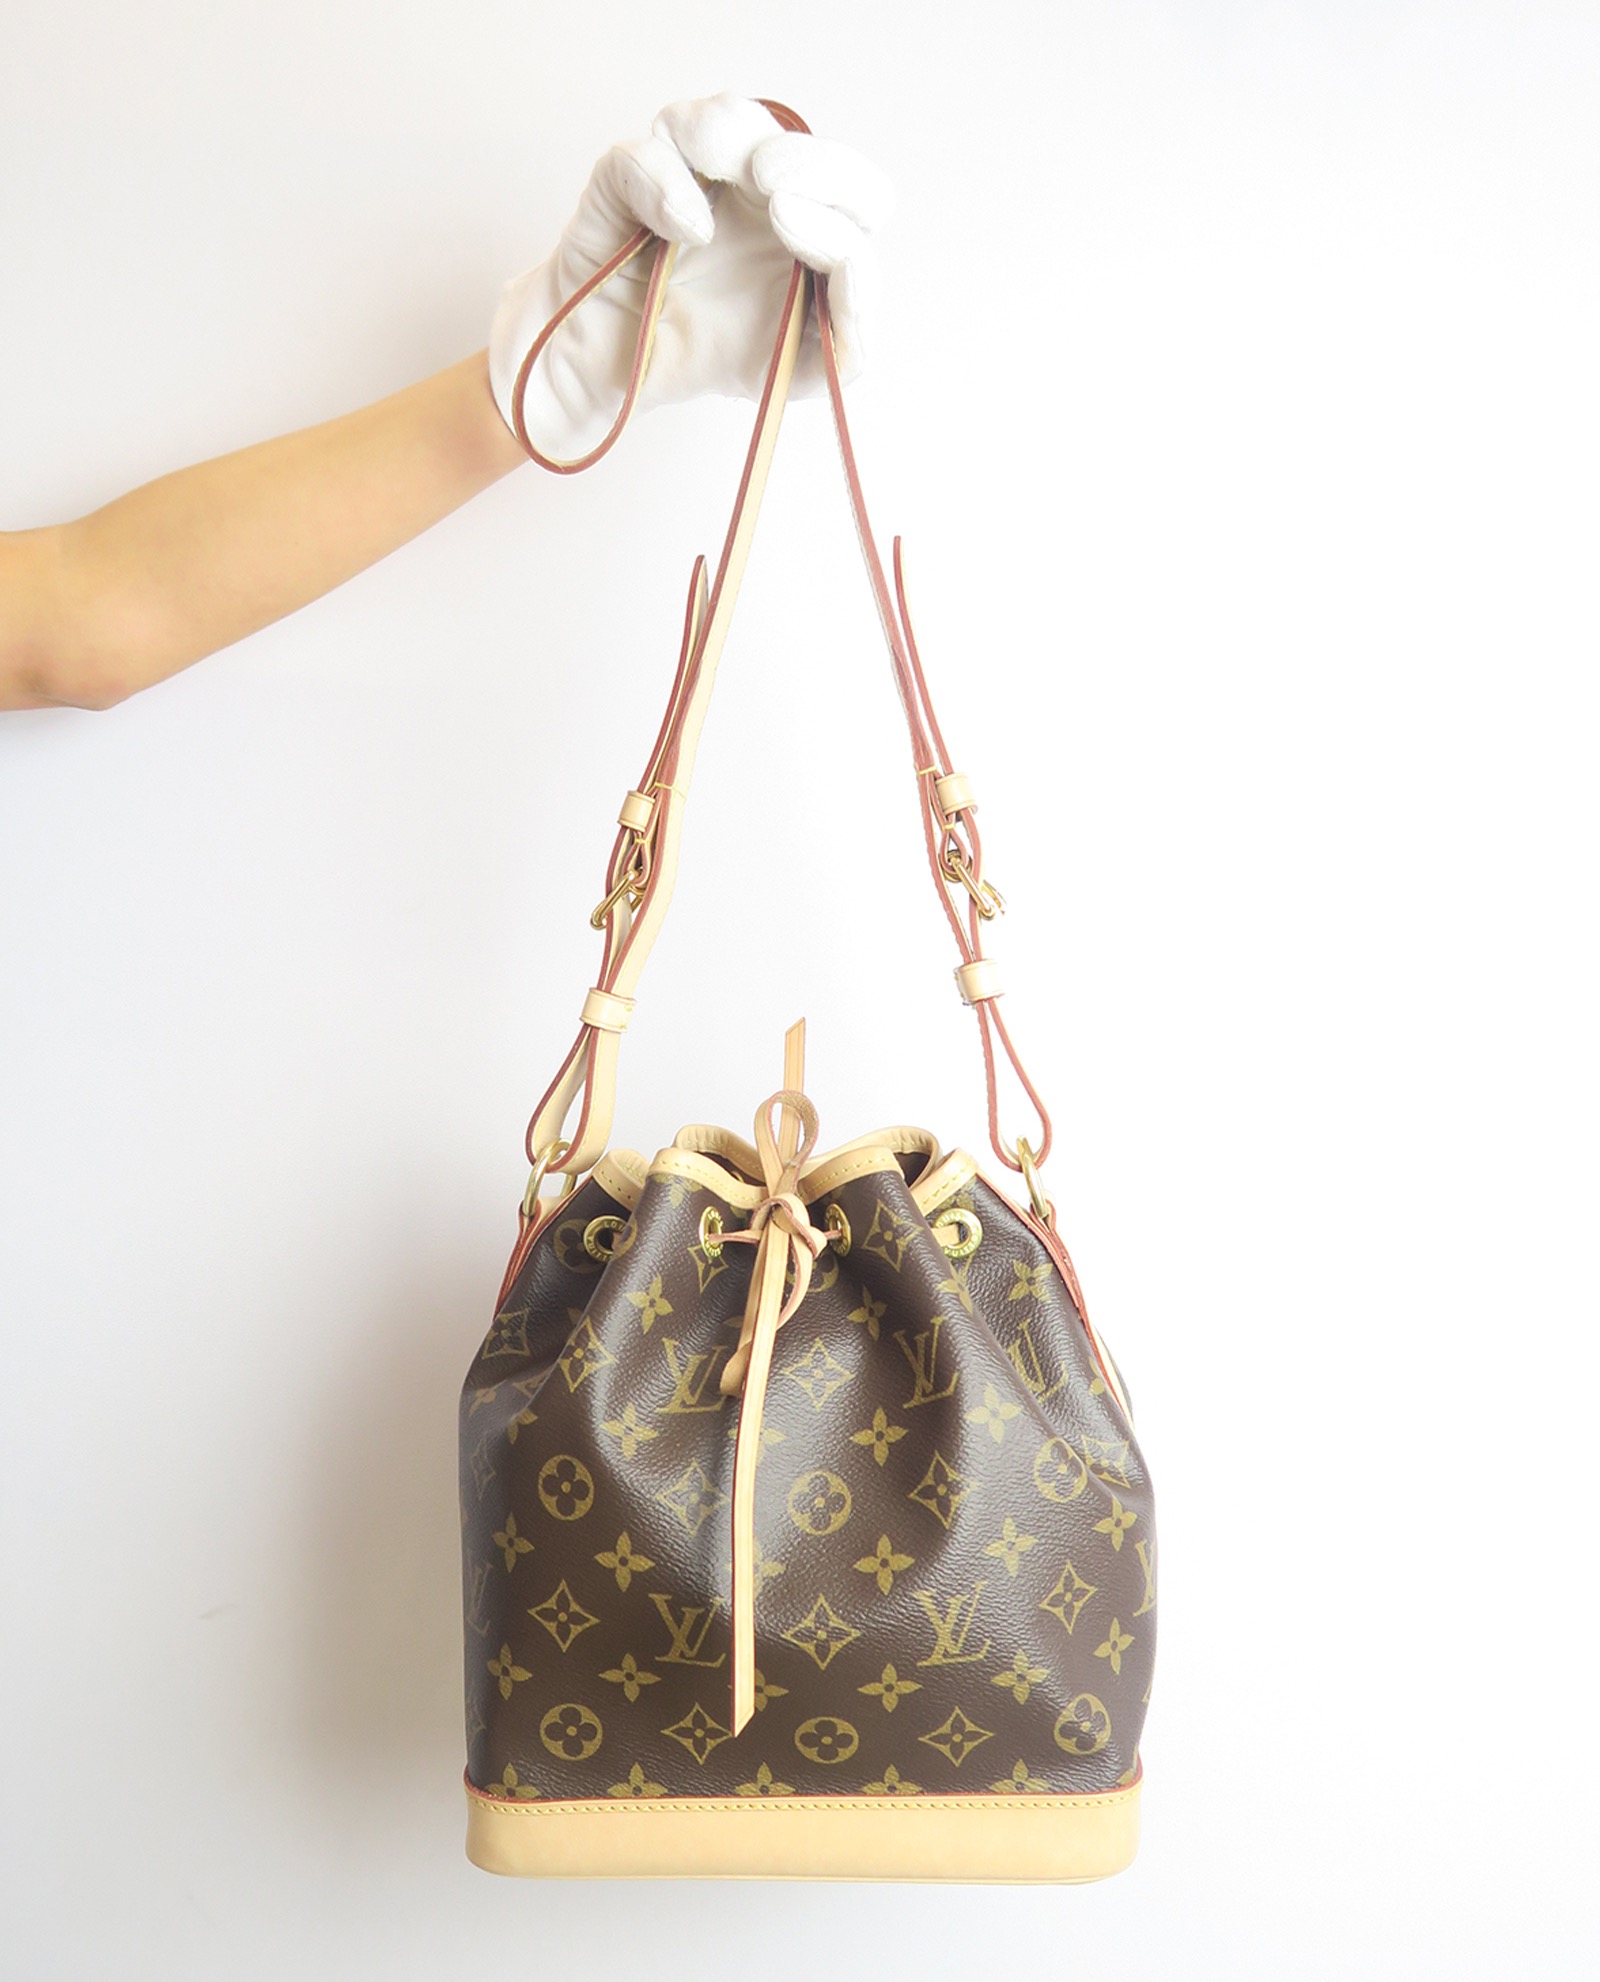 Satin Pillow Luxury Bag Shaper For Louis Vuitton's Noe, Petite Noe and Noe  BB.